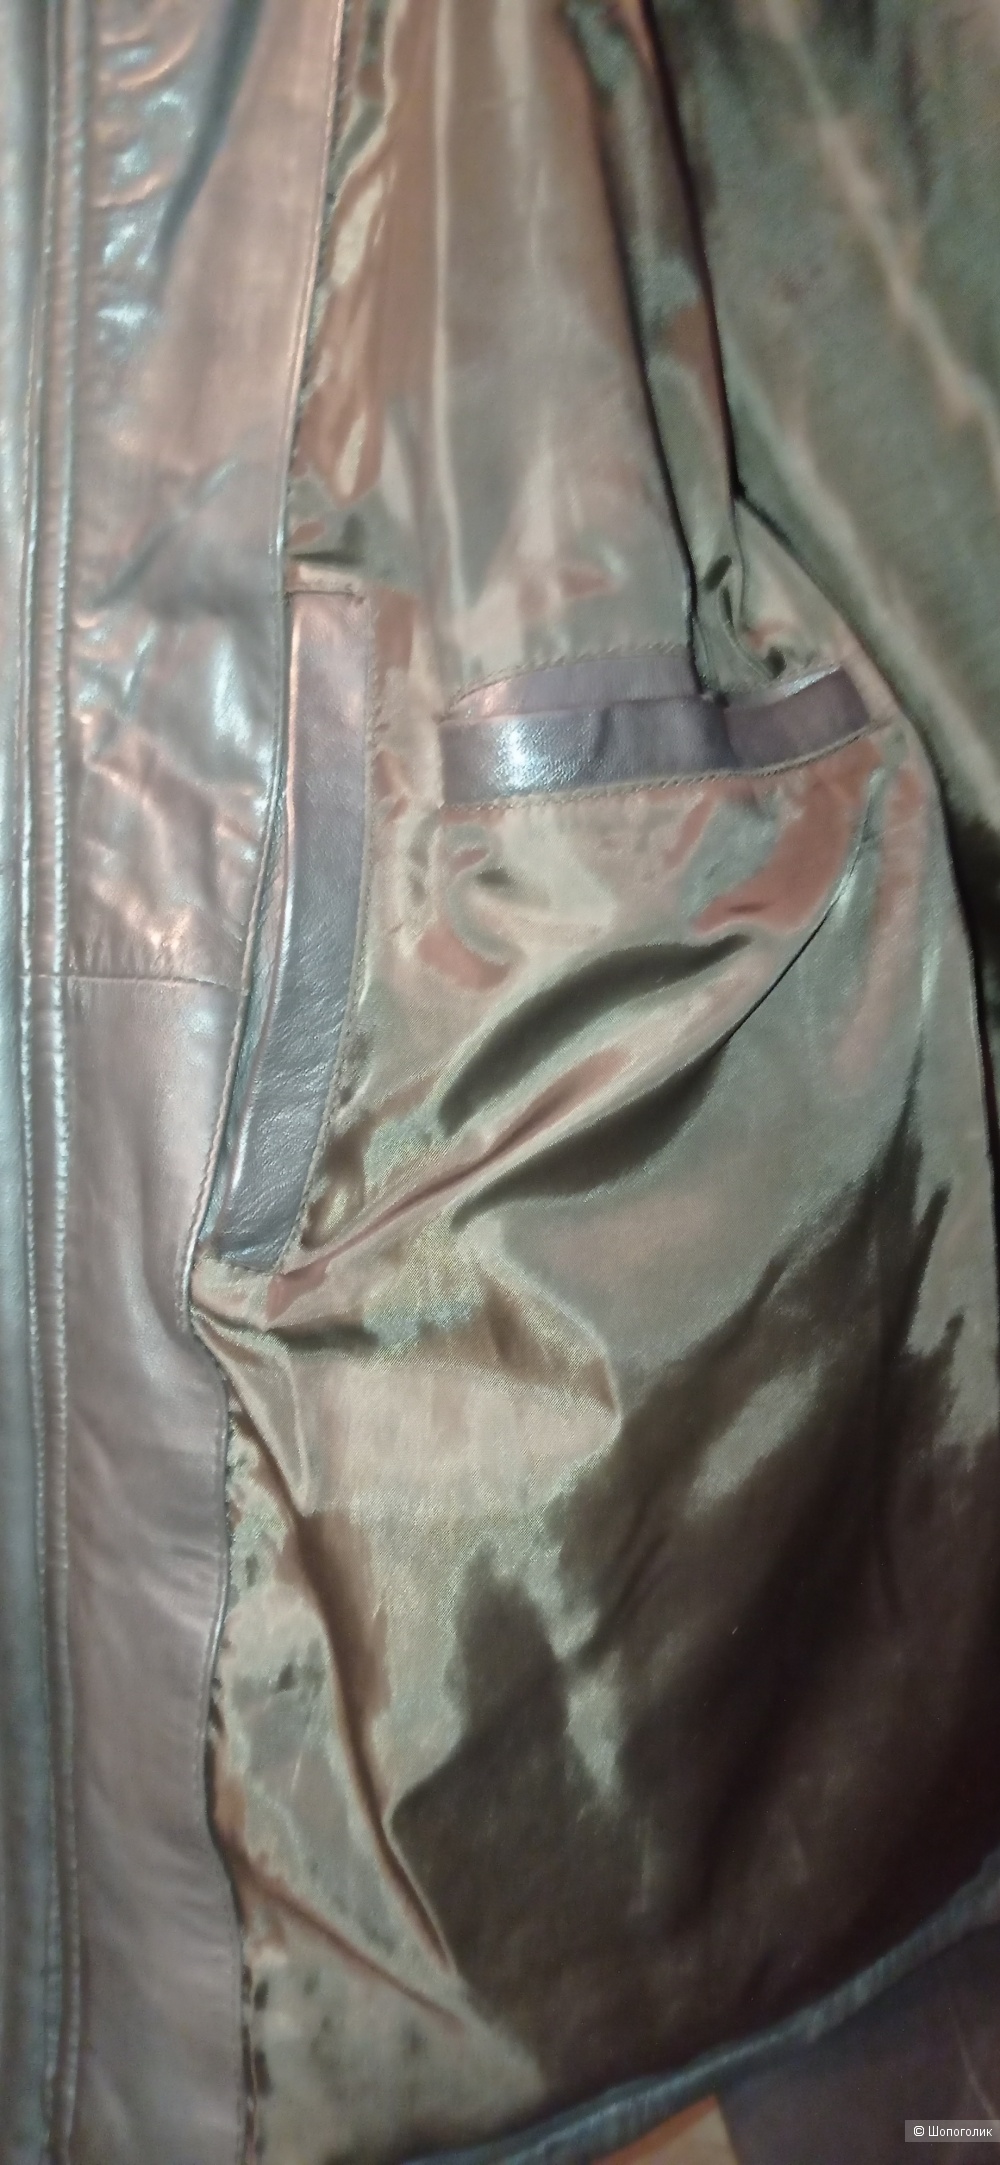 Куртка кожаная Jörg Weber 52/54 размер